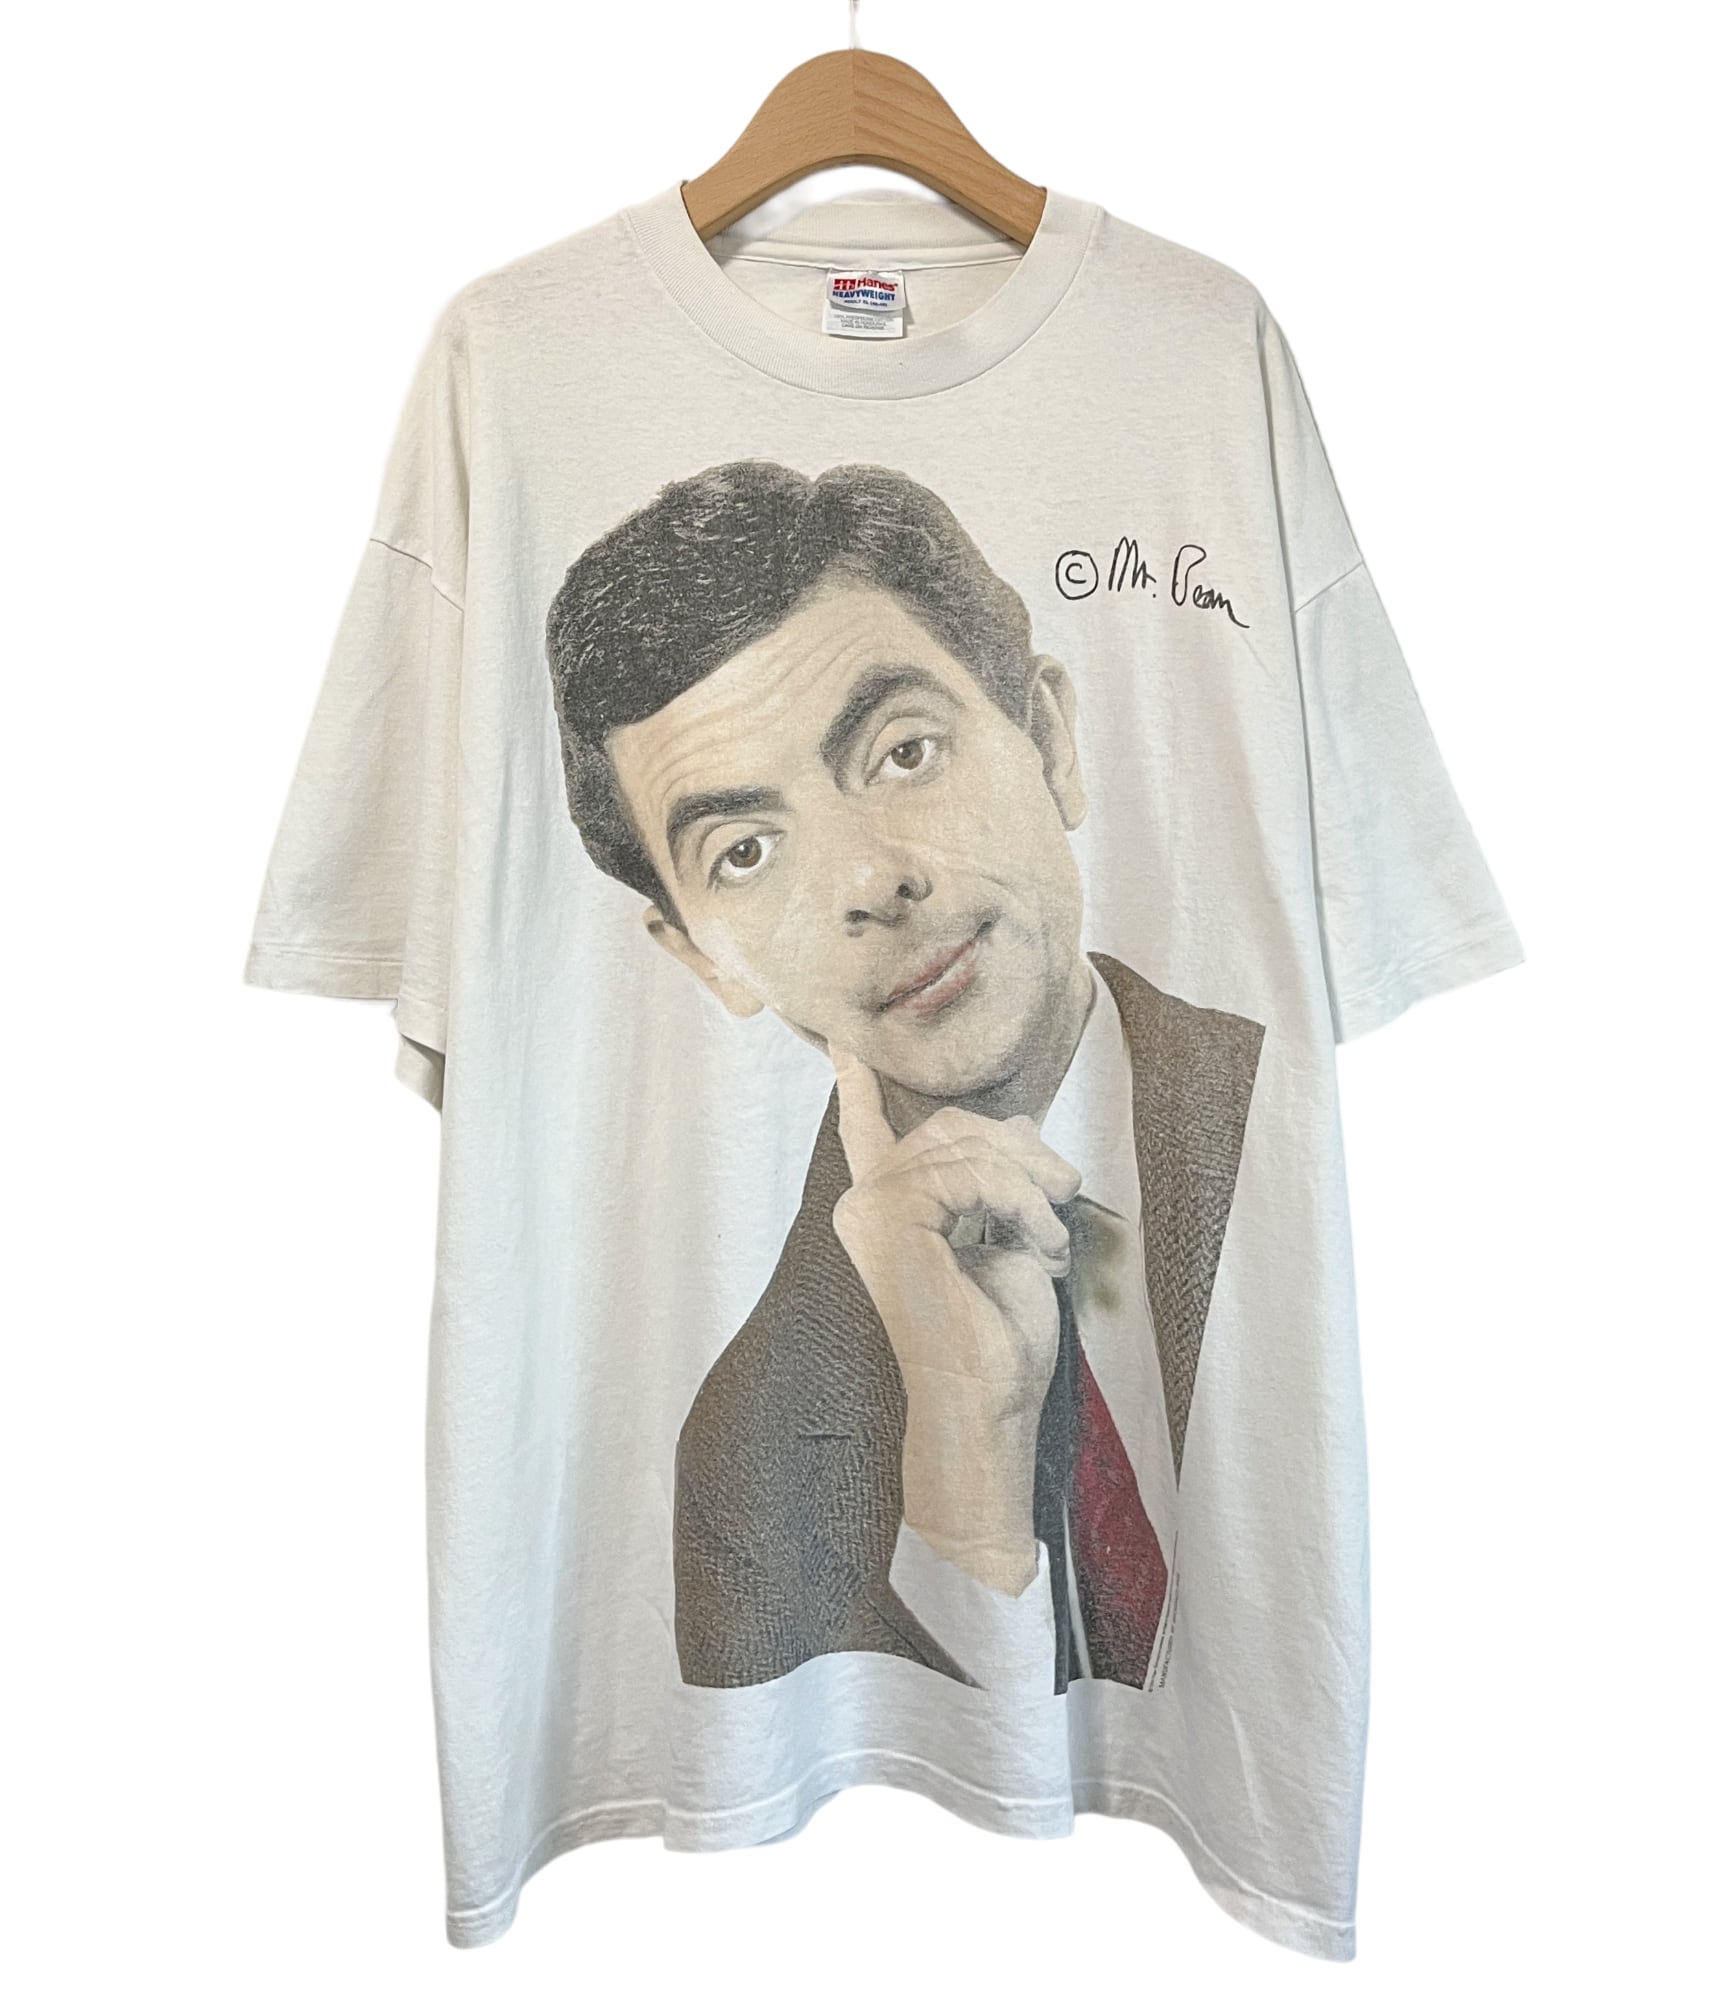 Vintage s Movie T shirt  Mr. Bean    BEGGARS BANQUET公式通販